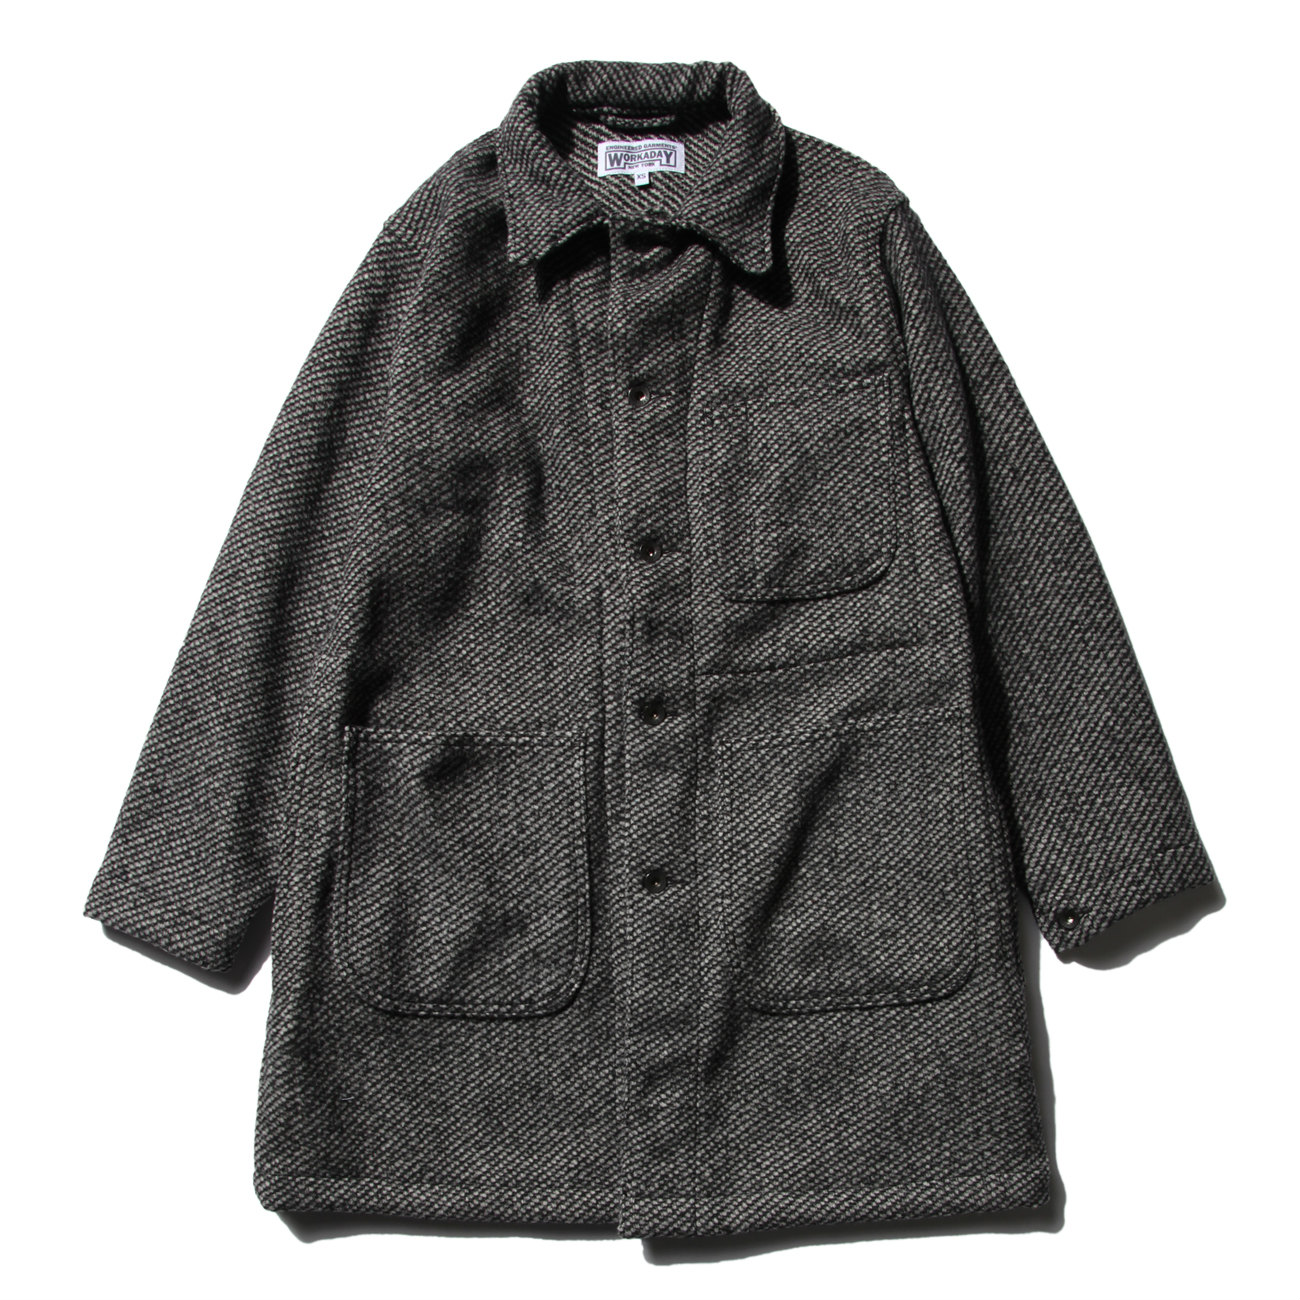 袖丈63Engineered Garments WORKADAY wool tweed